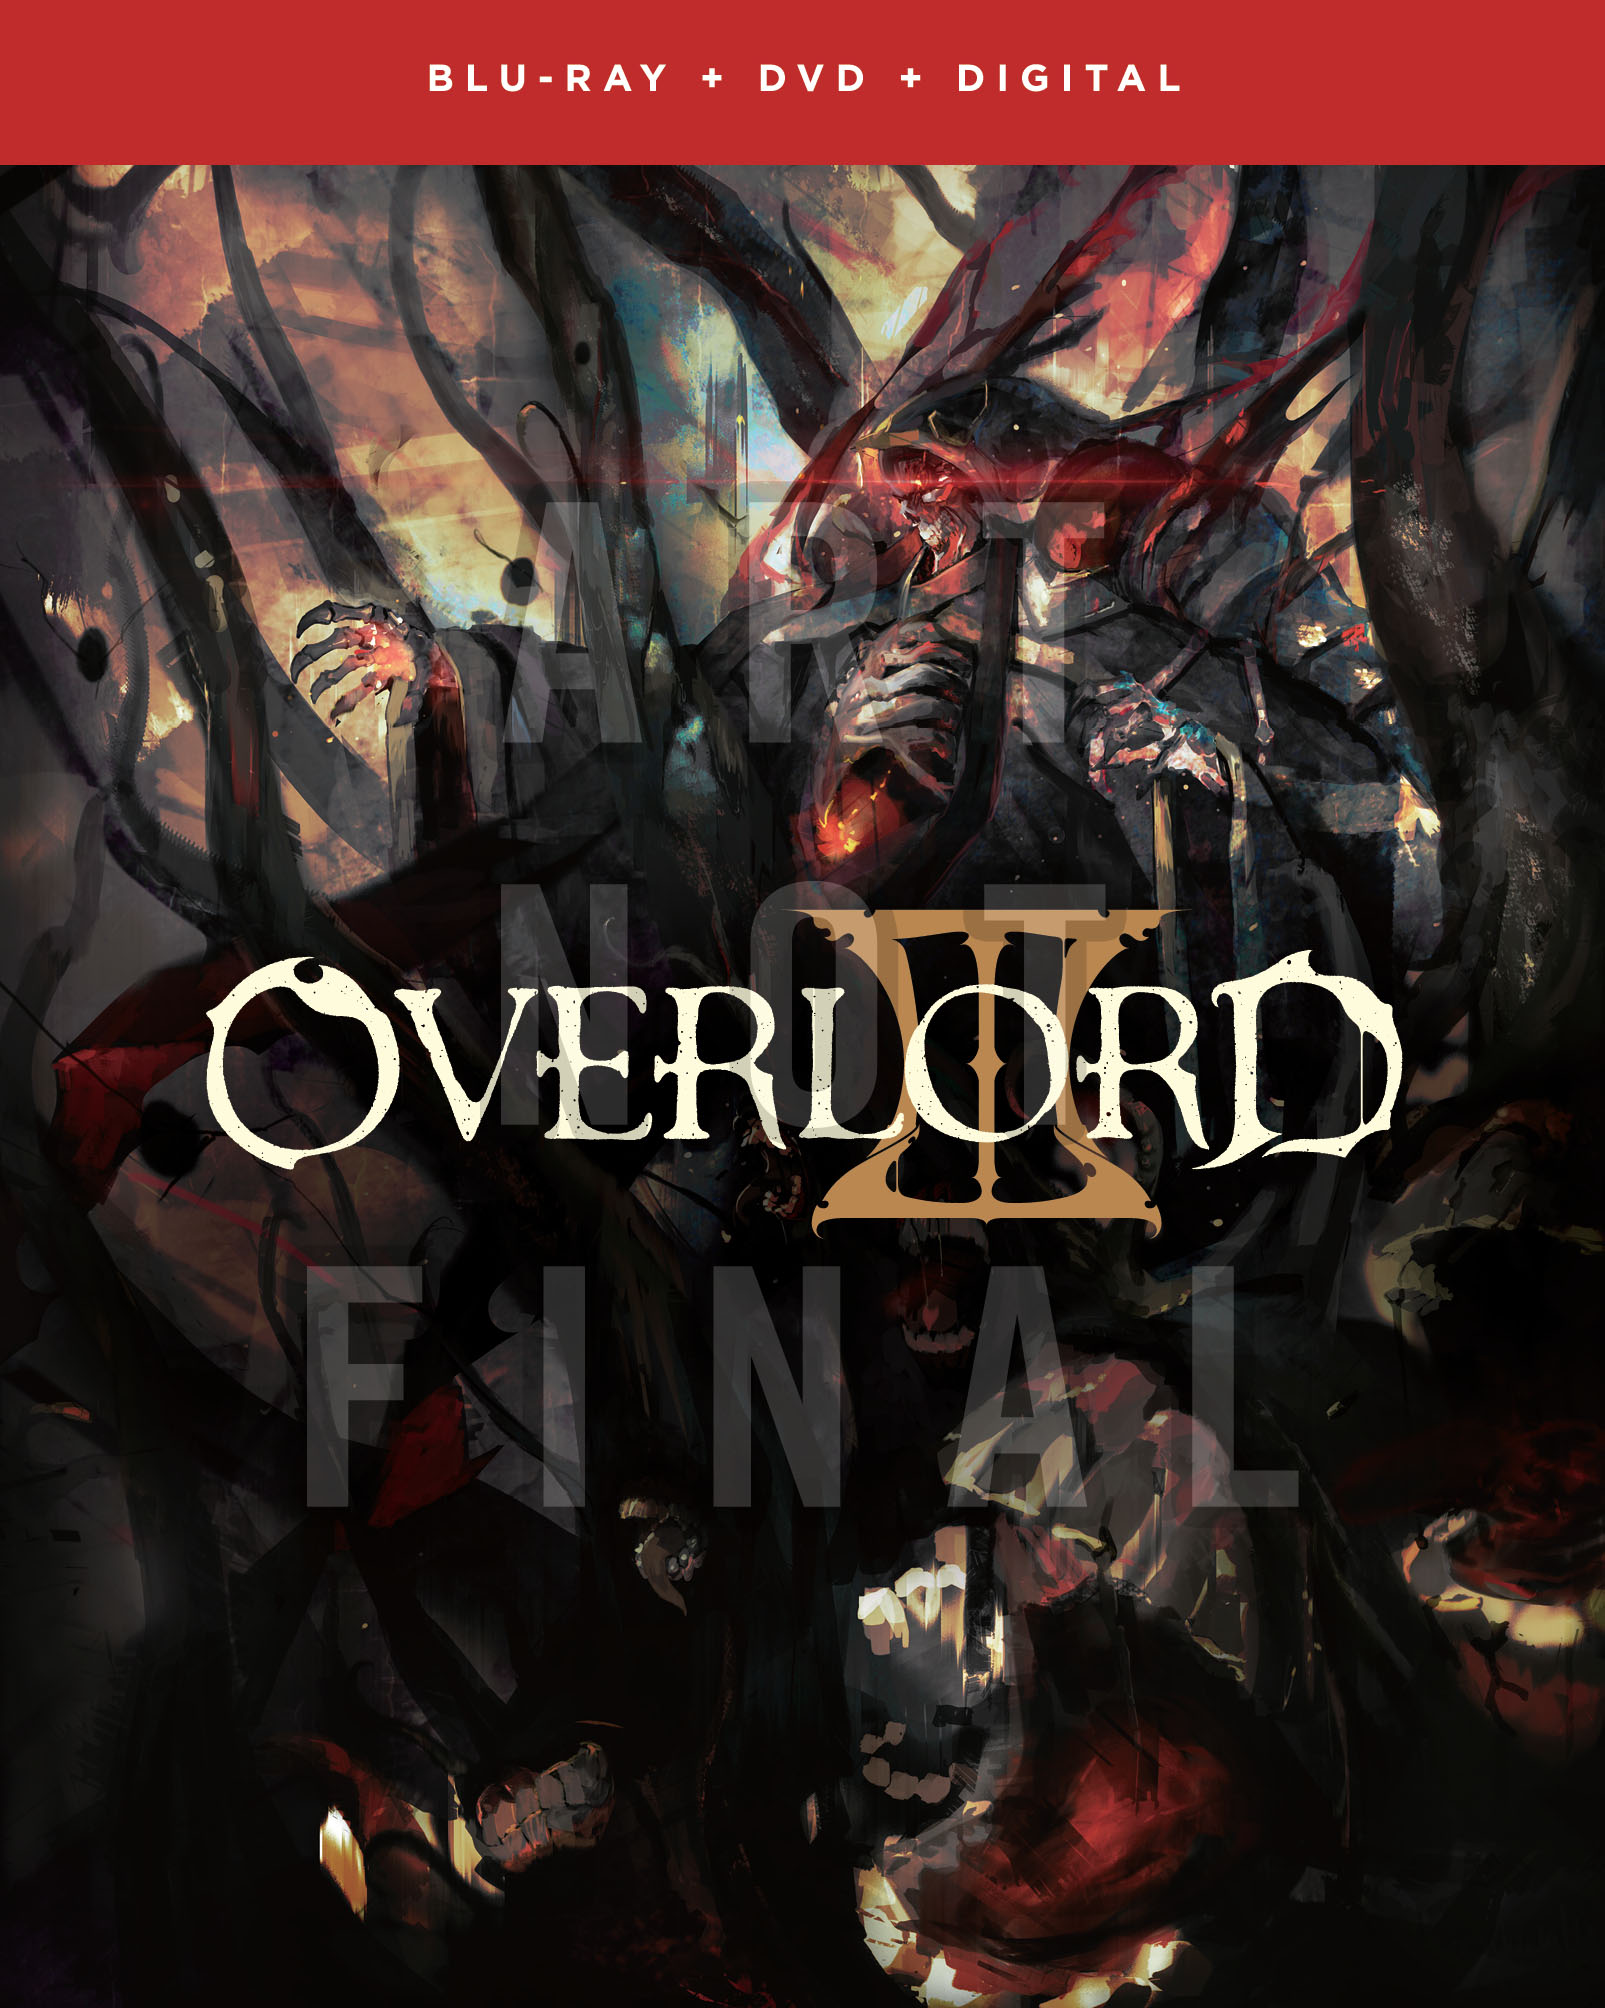 Overlord III (Anime) –